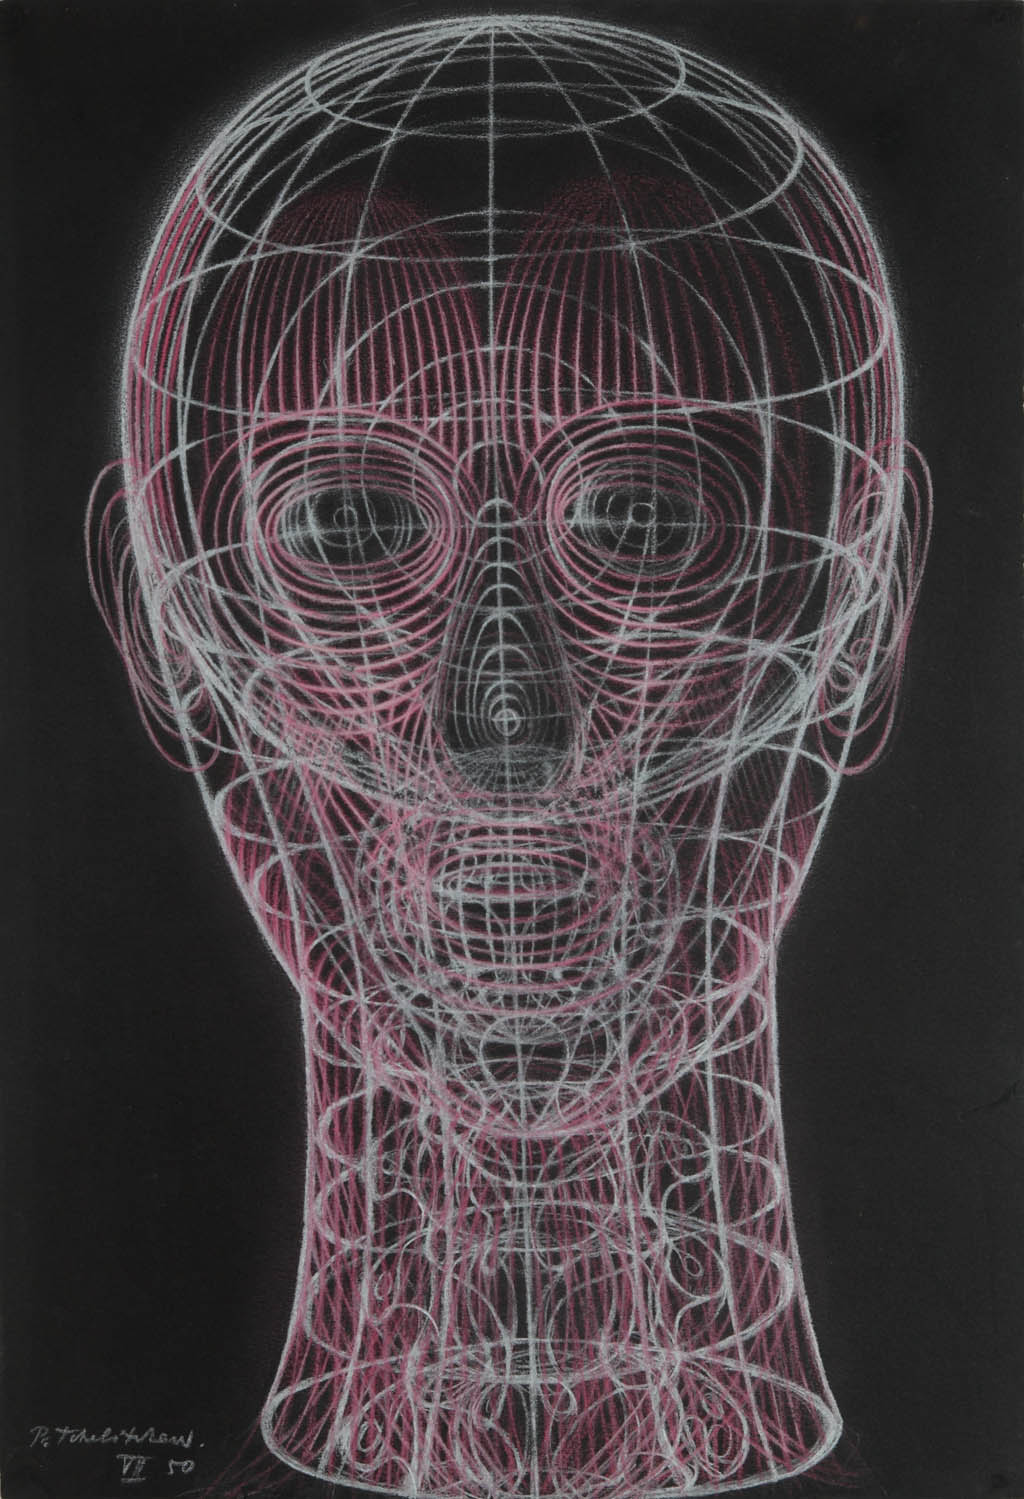 Pavel Tchelitchew - Spiral Head (VII) - 1950 gouache on paper